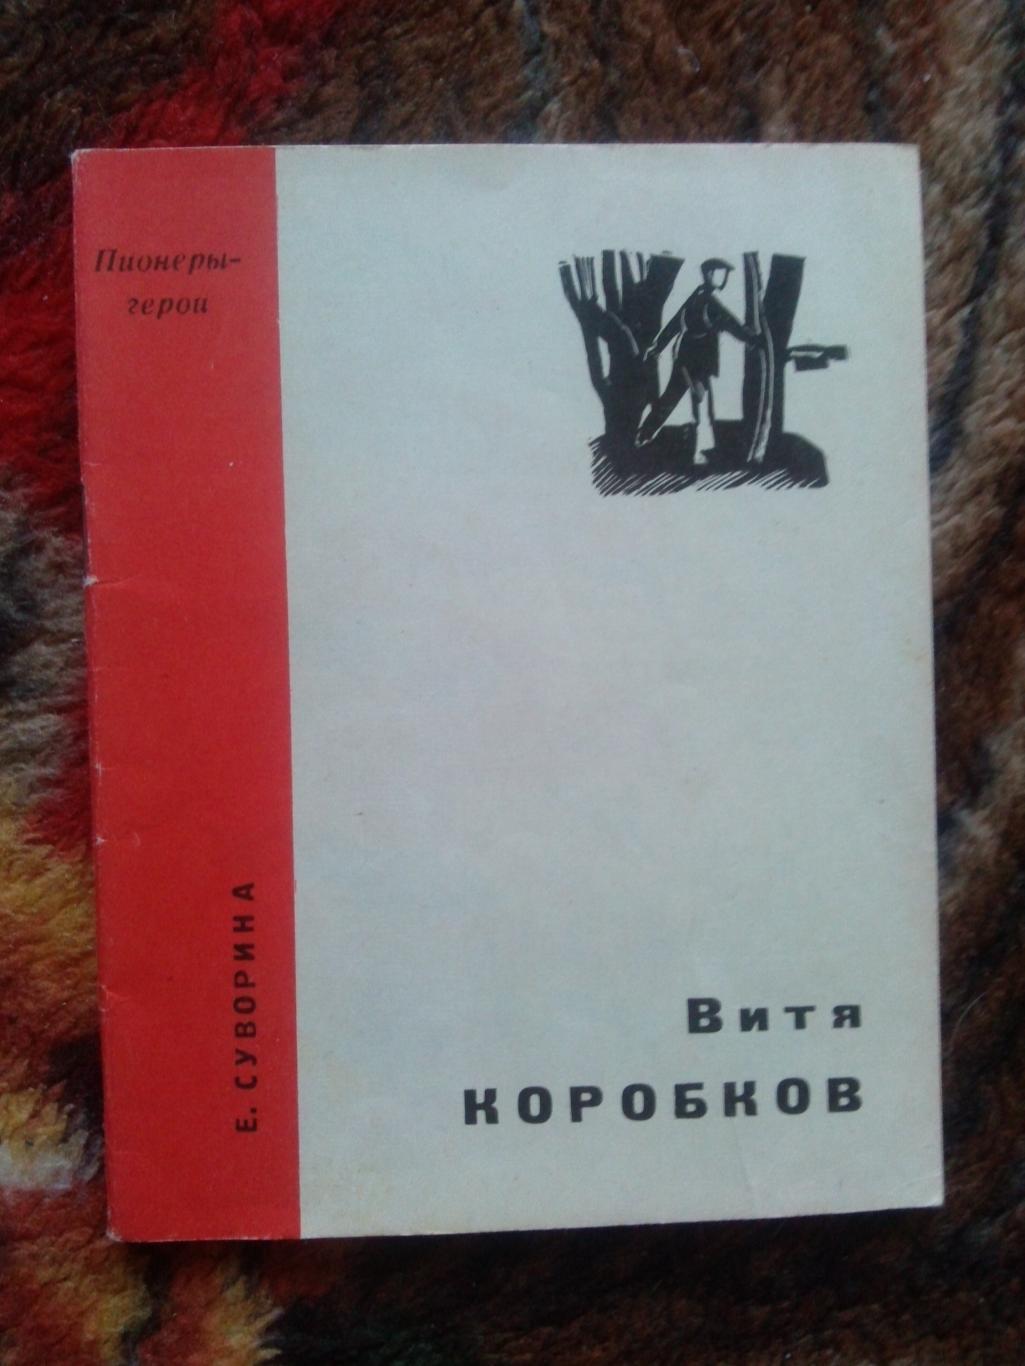 Пионеры-герои (Плакат + брошюра) 1967 г. Витя Коробков (Пионер , агитация) 3